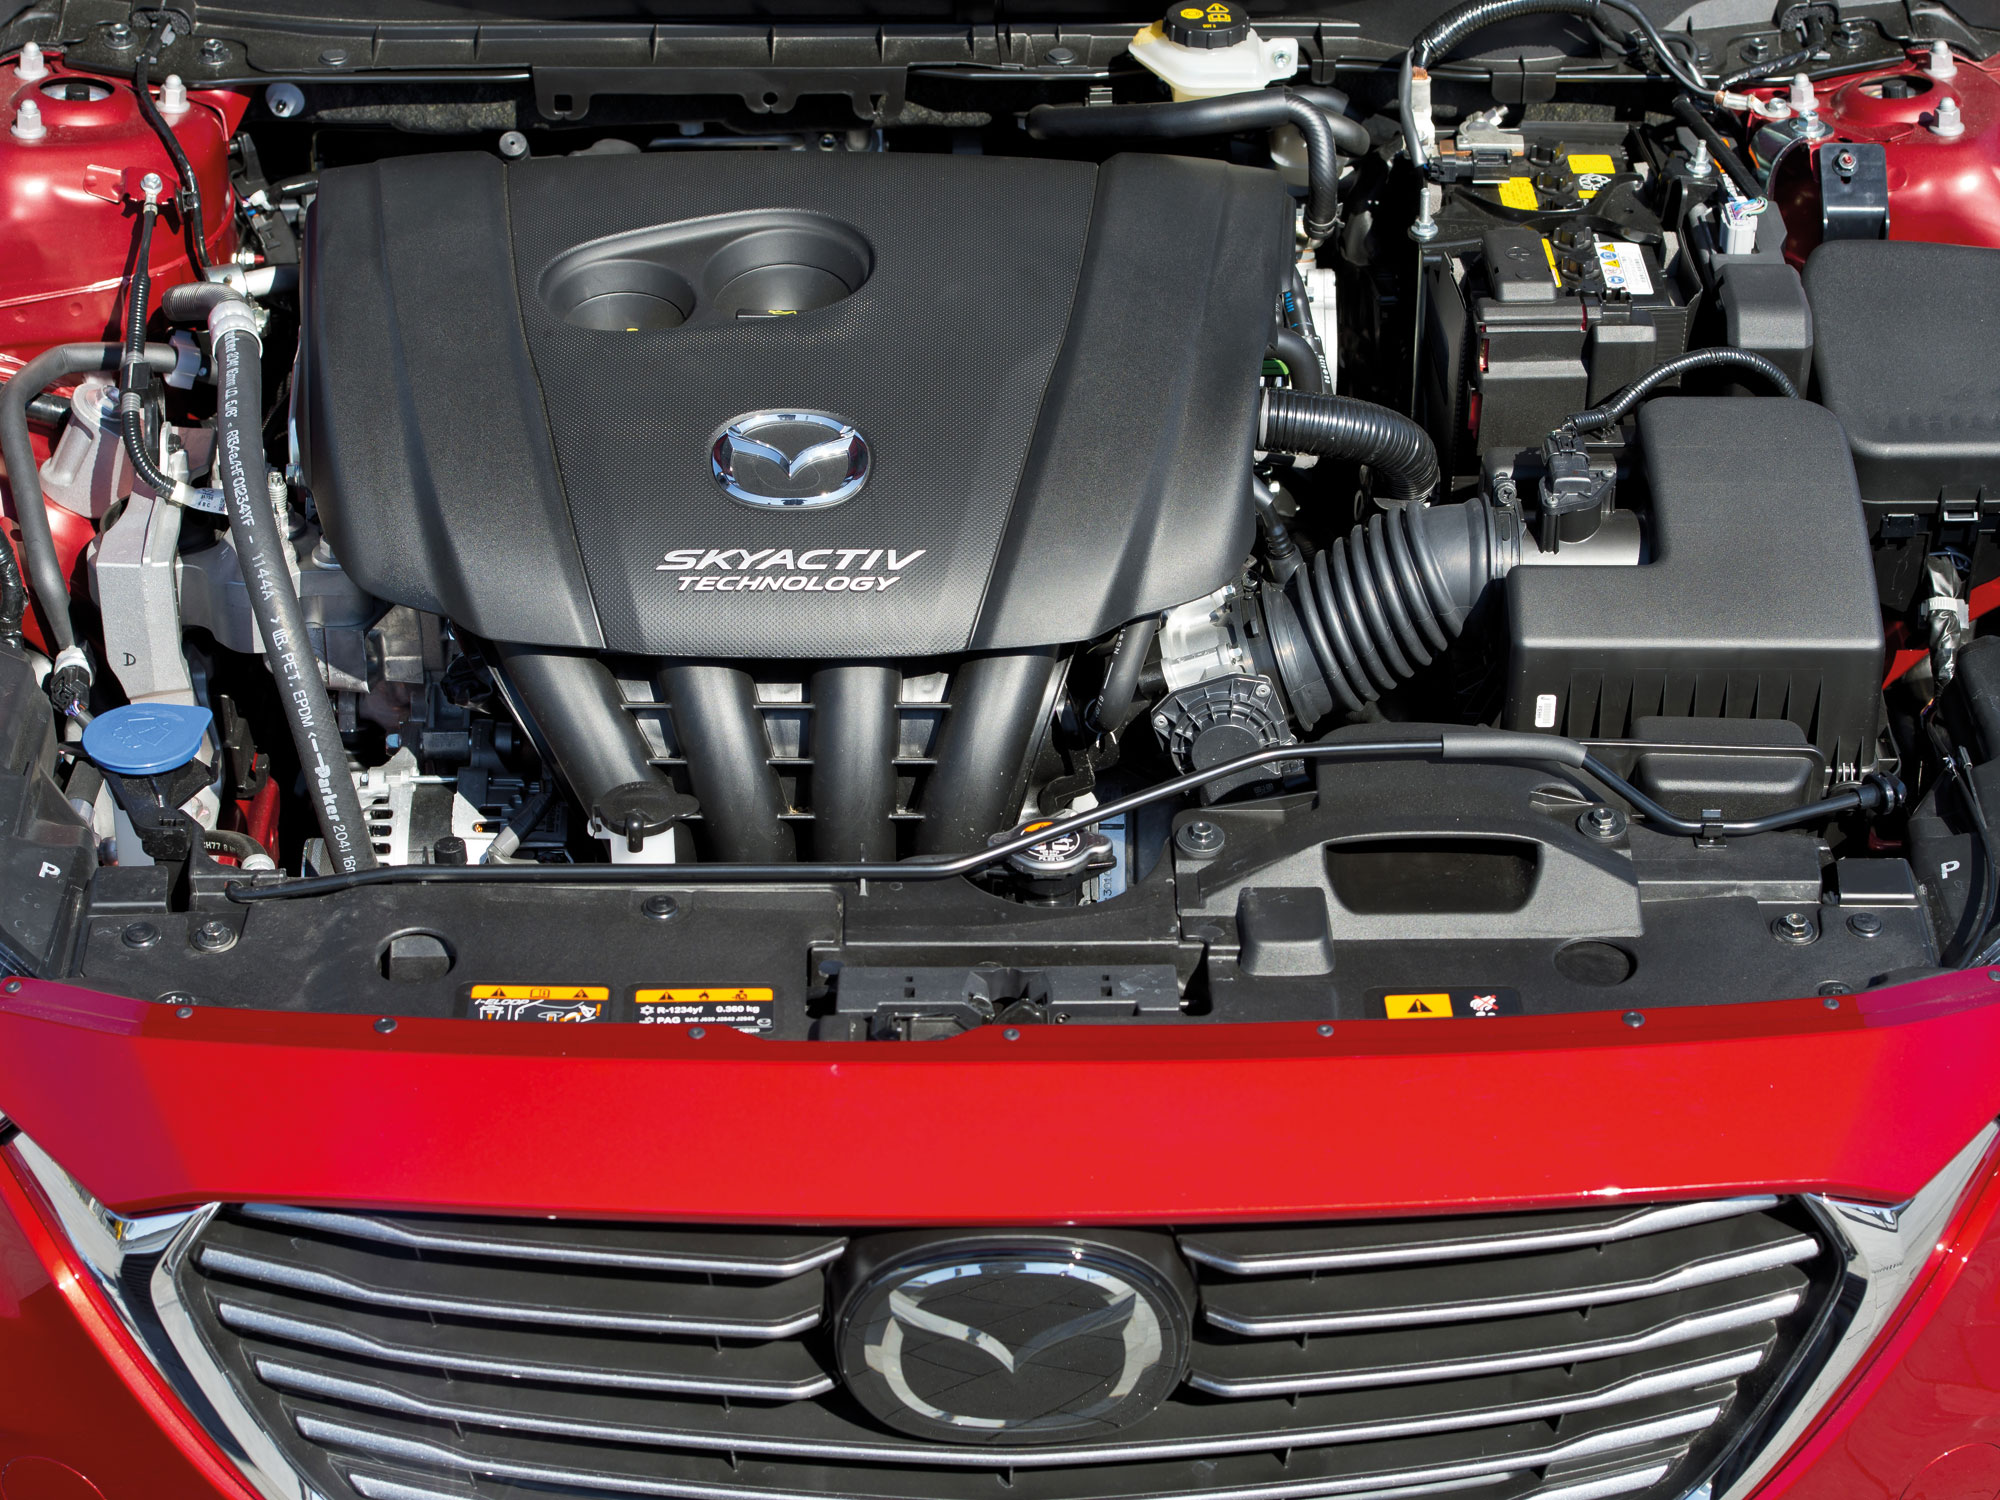 Двигатель мазда cx5. Mazda CX 5 двигатель. Мазда СХ-5 под капотом. Mazda CX 5 под капотом. Мазда CX 5 2.0 двигатель.